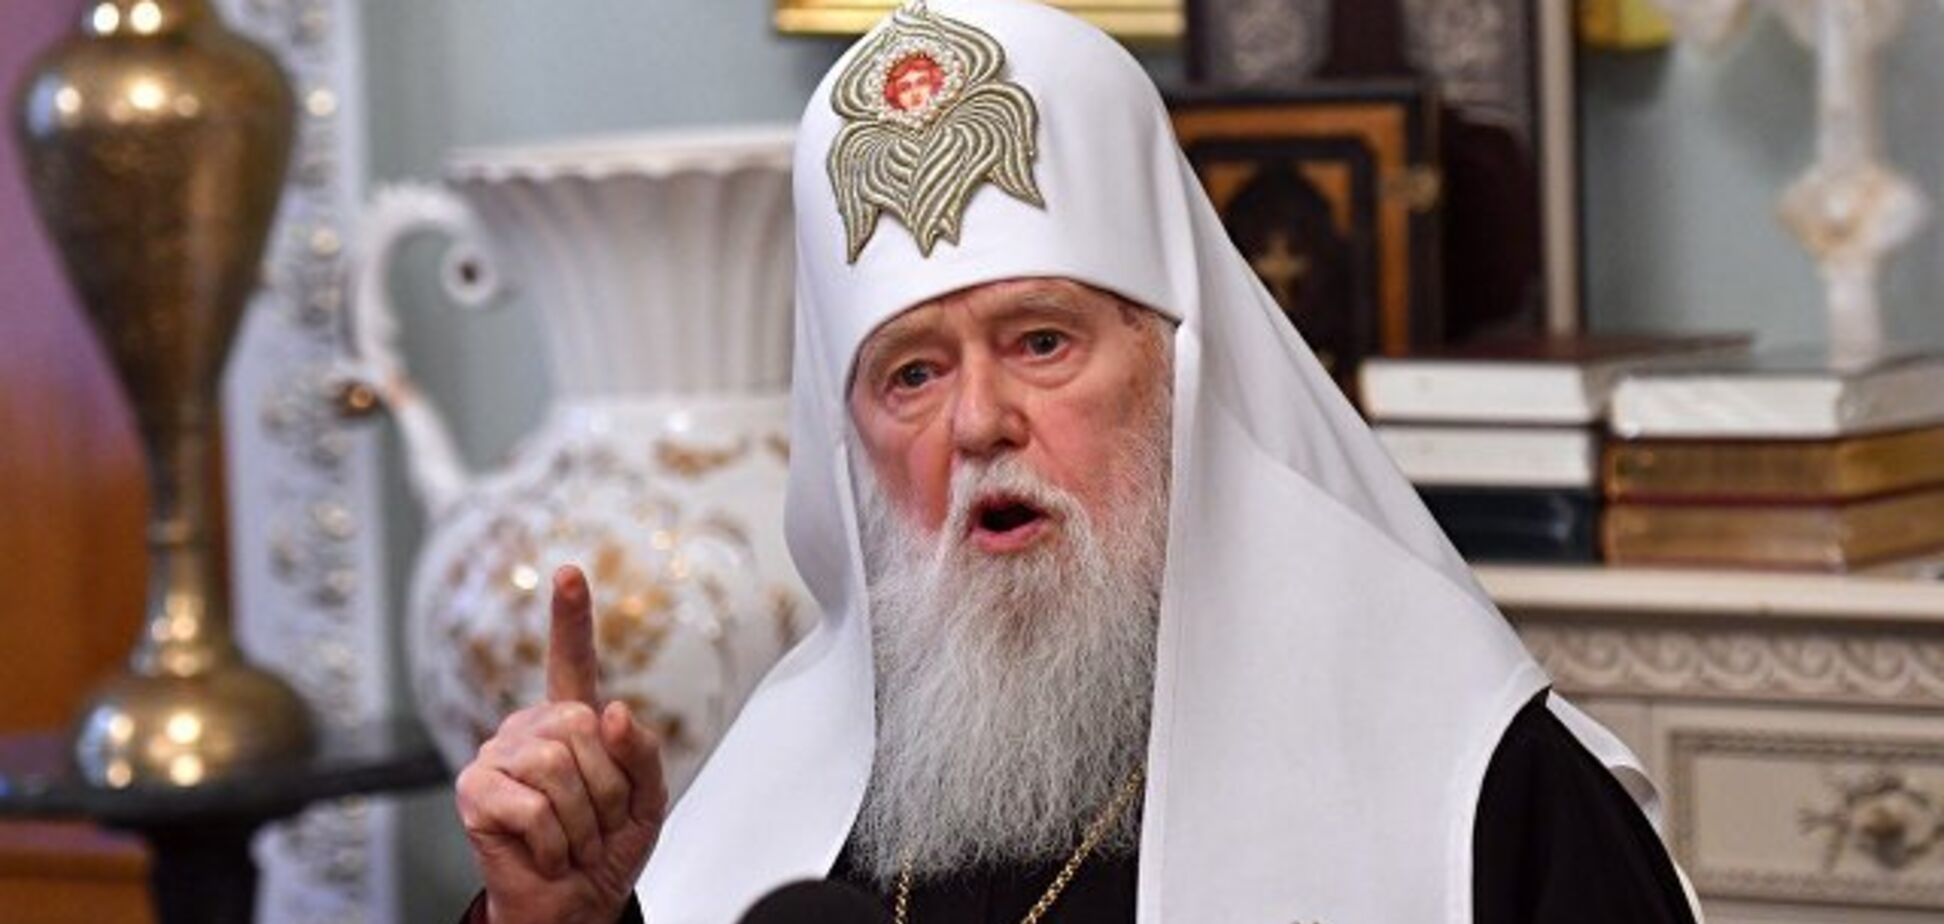 'Равная Московскому патриархату': Филарет заявил претензии на новый статус ПЦУ